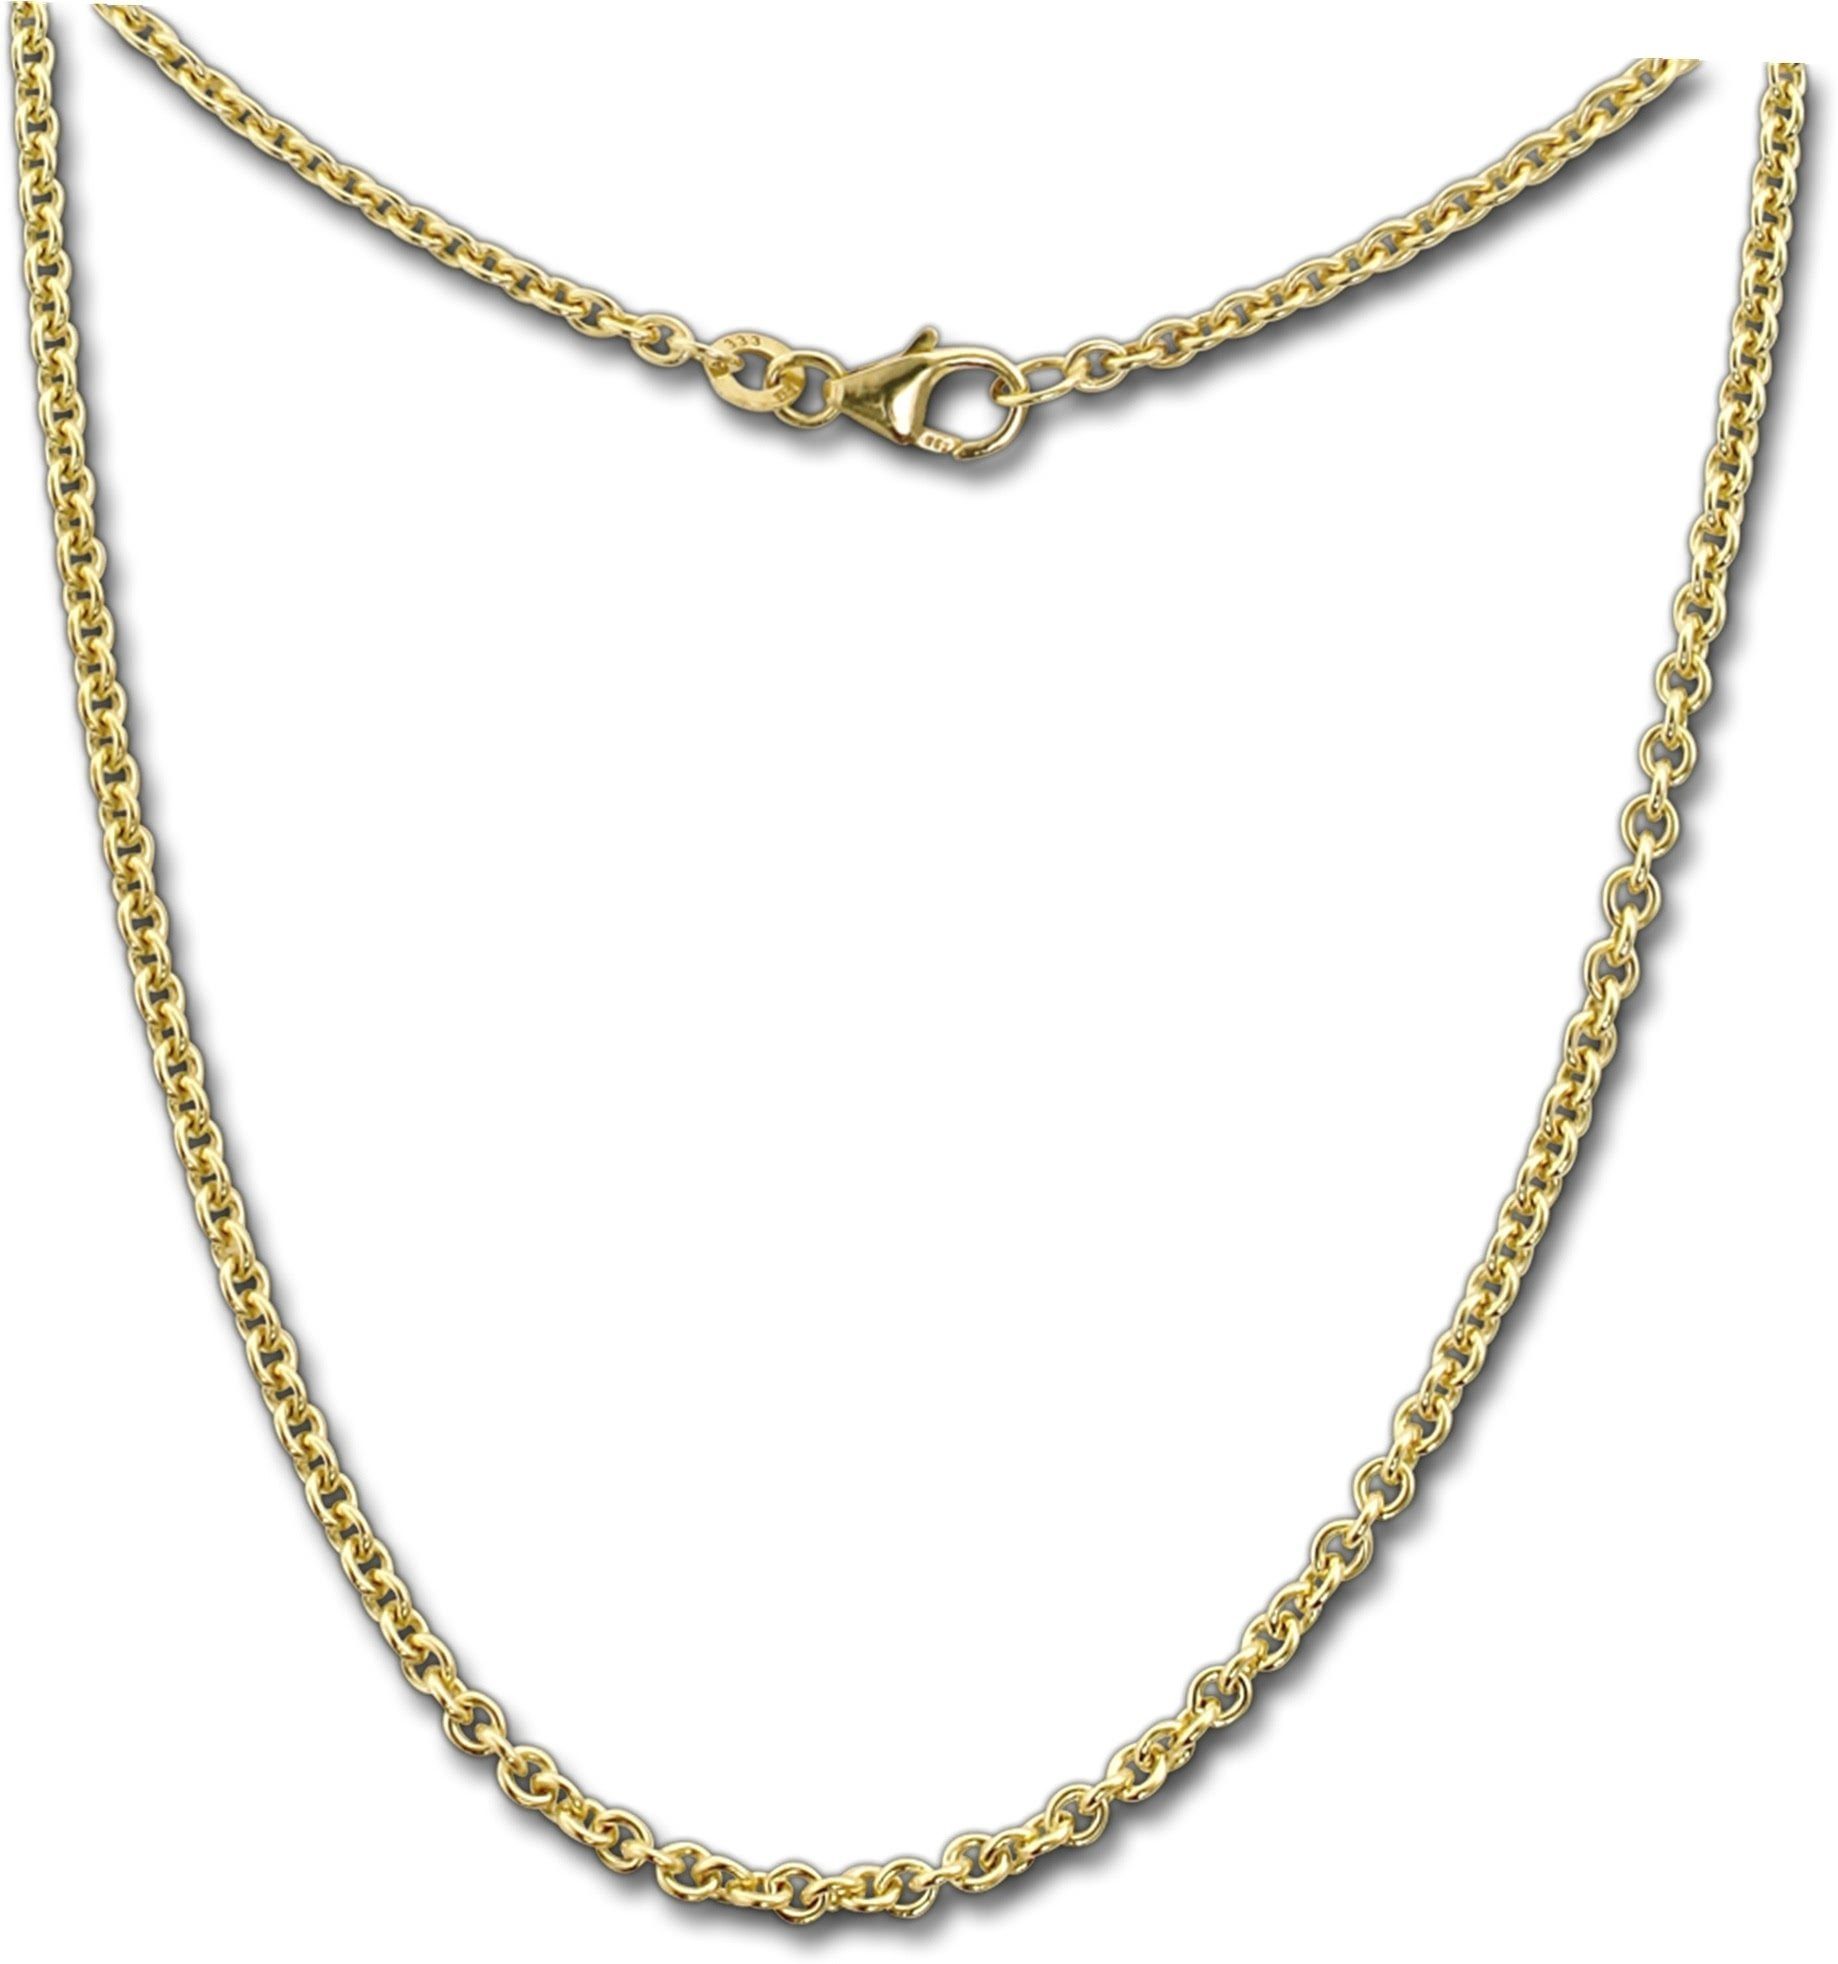 GoldDream Goldkette GoldDream Collier Halskette 333Gold (Collier), Damen Colliers Halskette 50cm, 333 Gelbgold - 8 Karat Echtgold, 333er